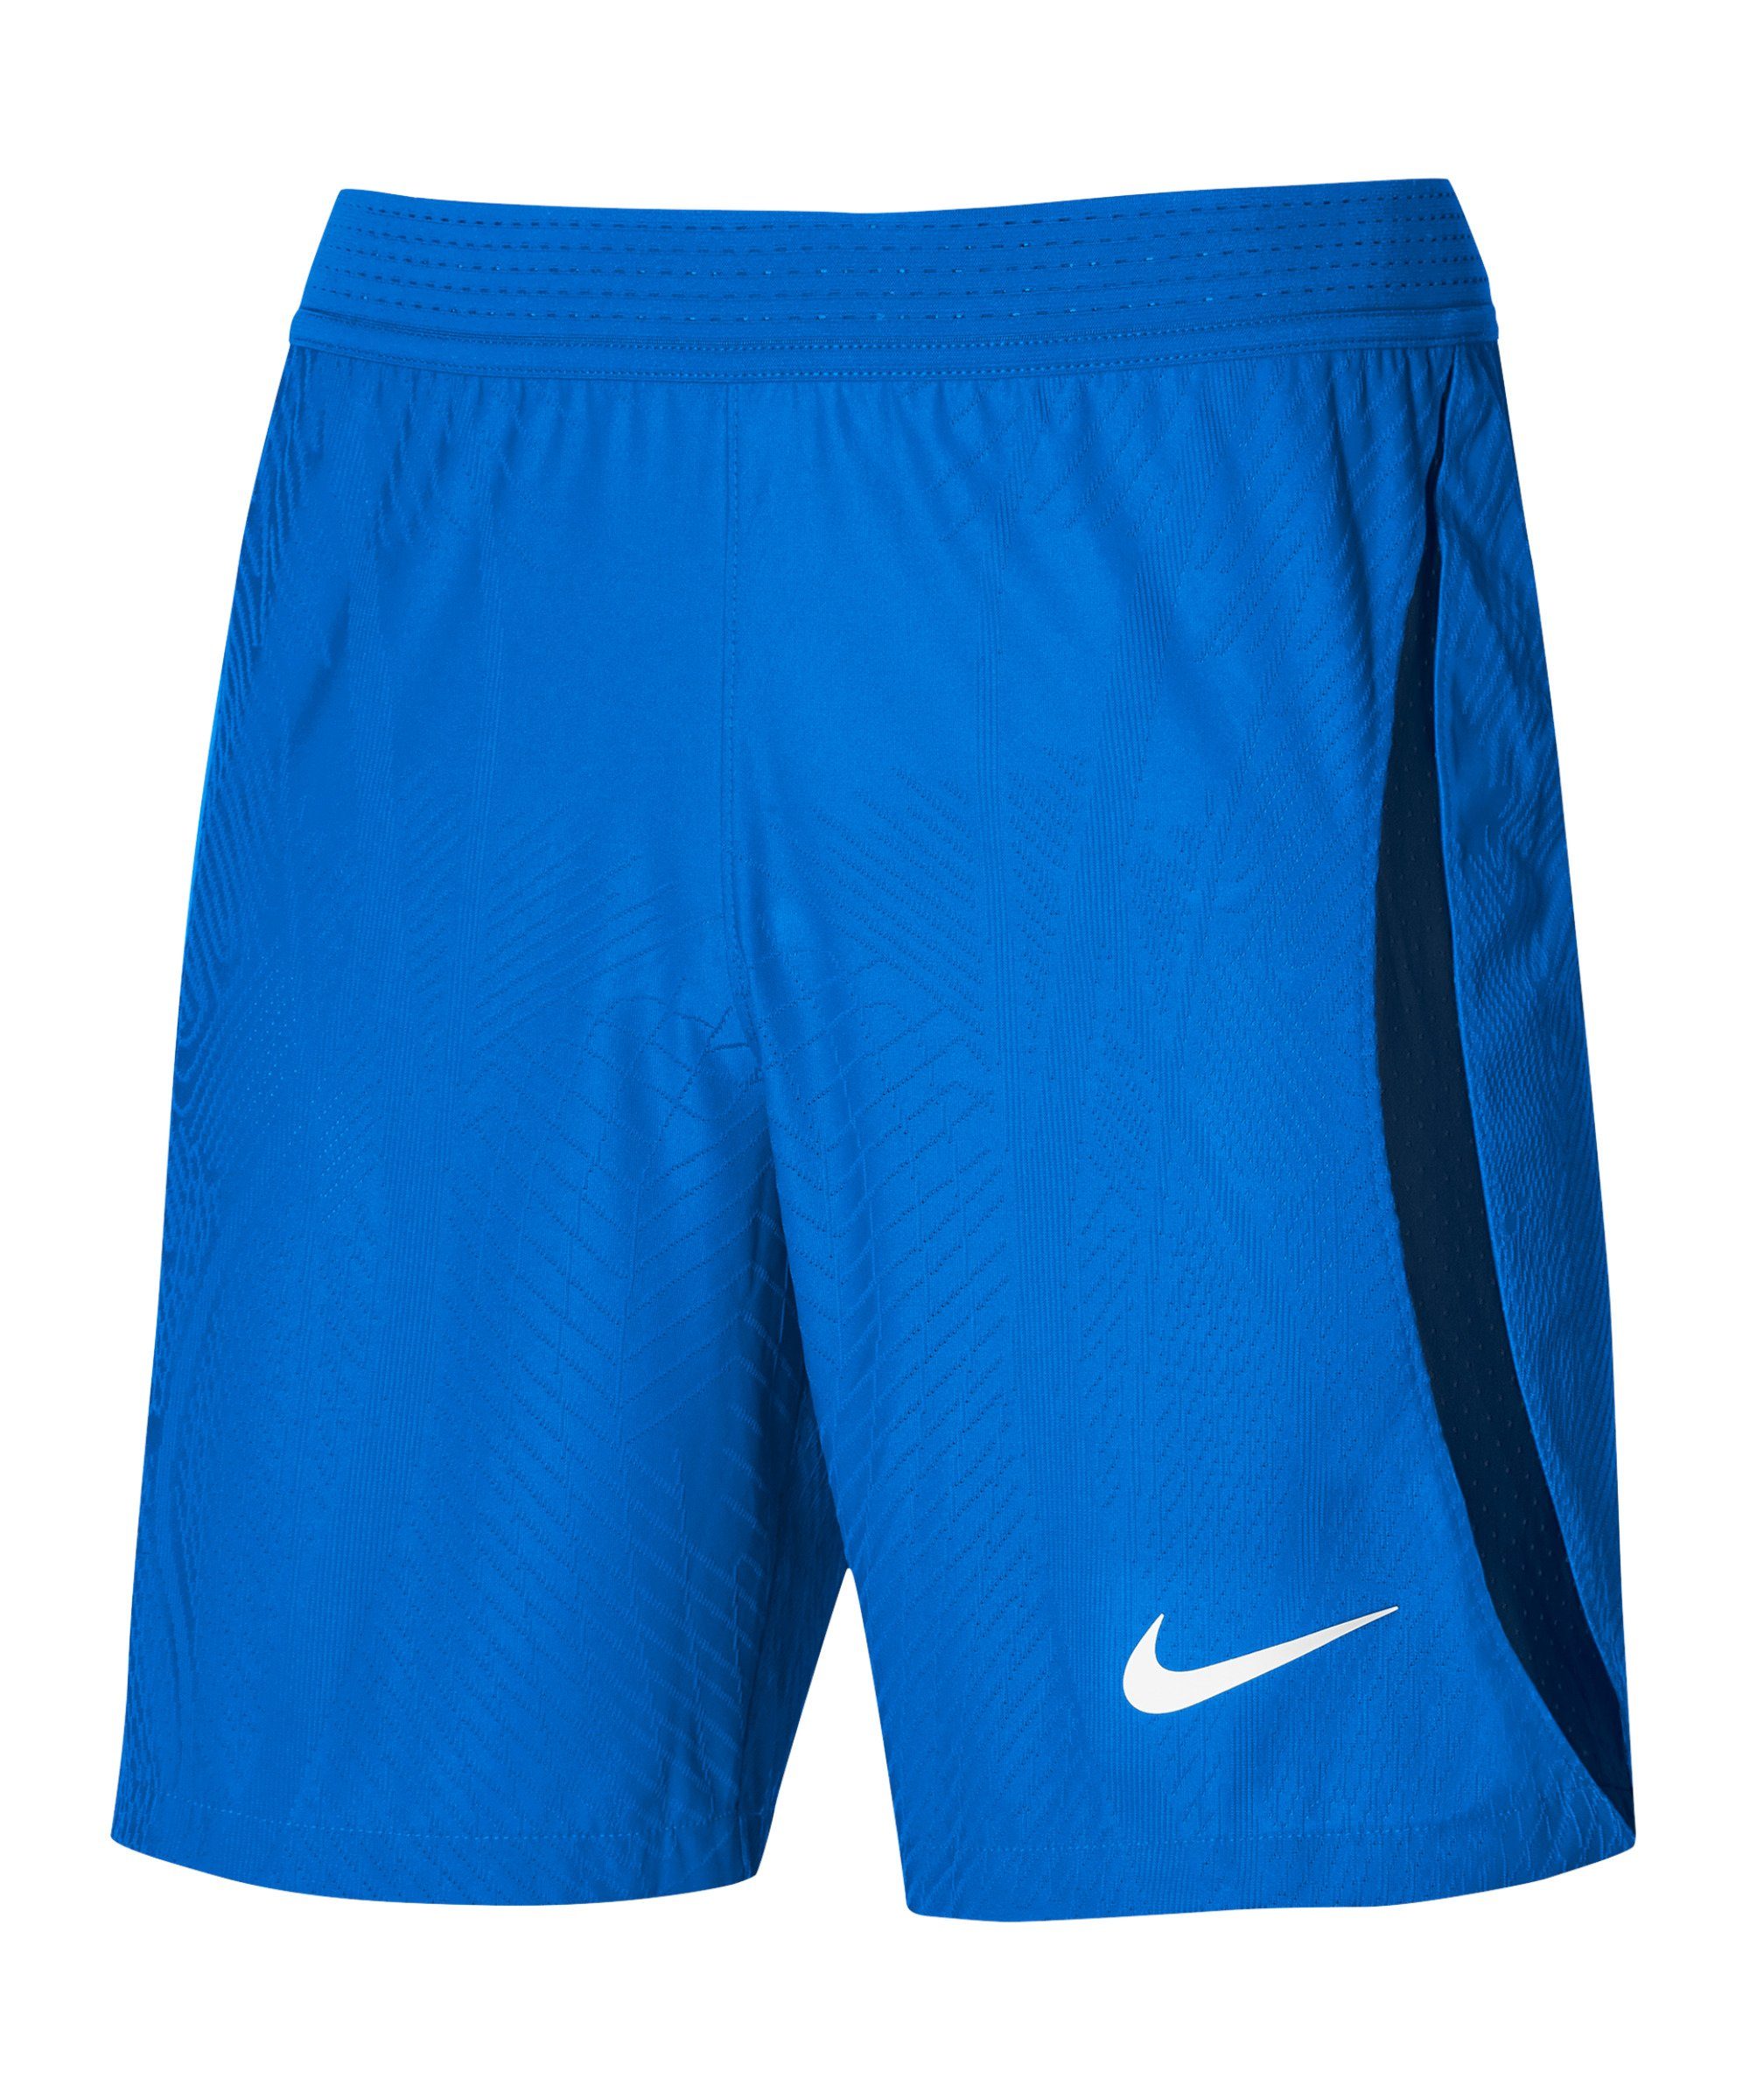 Sporthose dunkelblaublauweiss Nike ADV Short IV Vaporknit